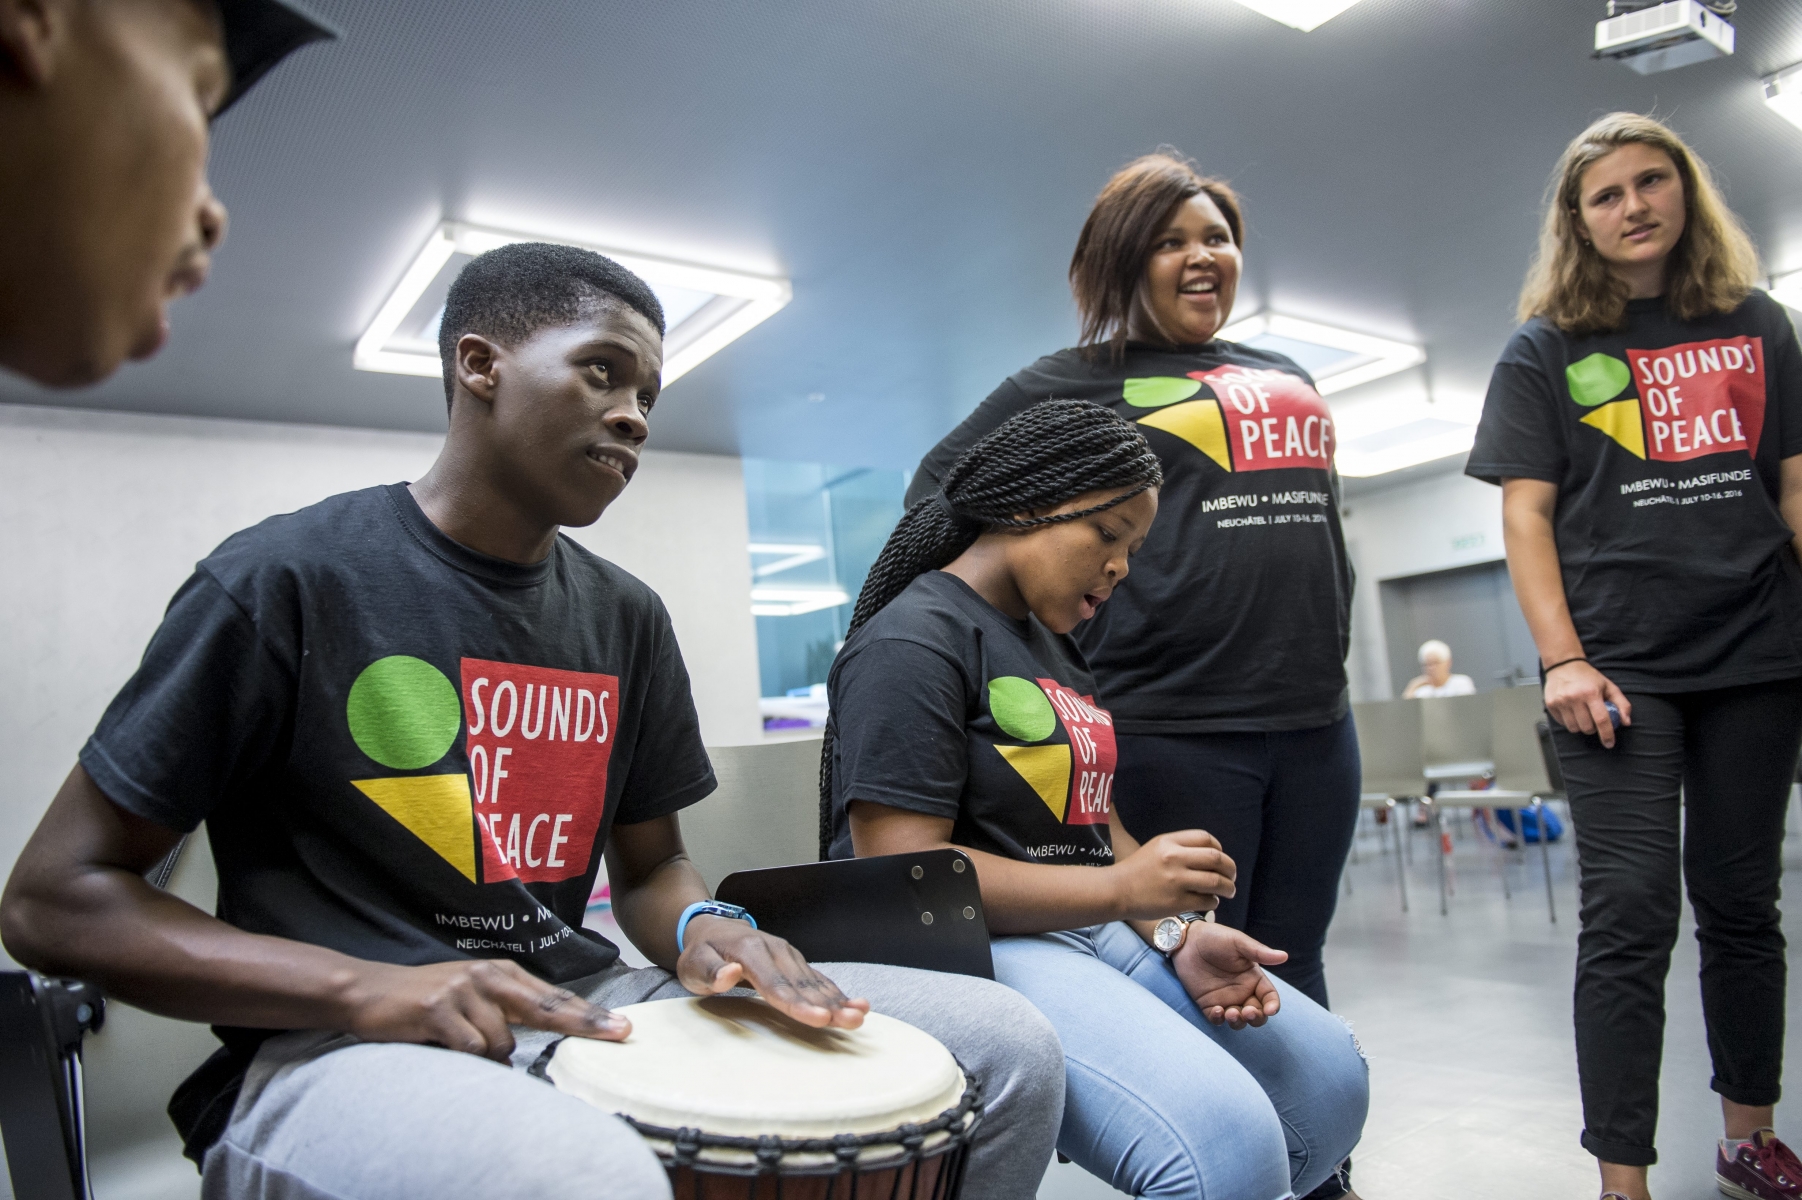 Sounds of peace : IMBEWU organise un echange culturel musical avec Masifunde. Des choristes sud-africains ages de 14 a 18 ans participent a une semaine d'échange avec des jeunes suisses de leur age. 

Neuchatel, le 12.07.2016

Photo : Lucas Vuitel